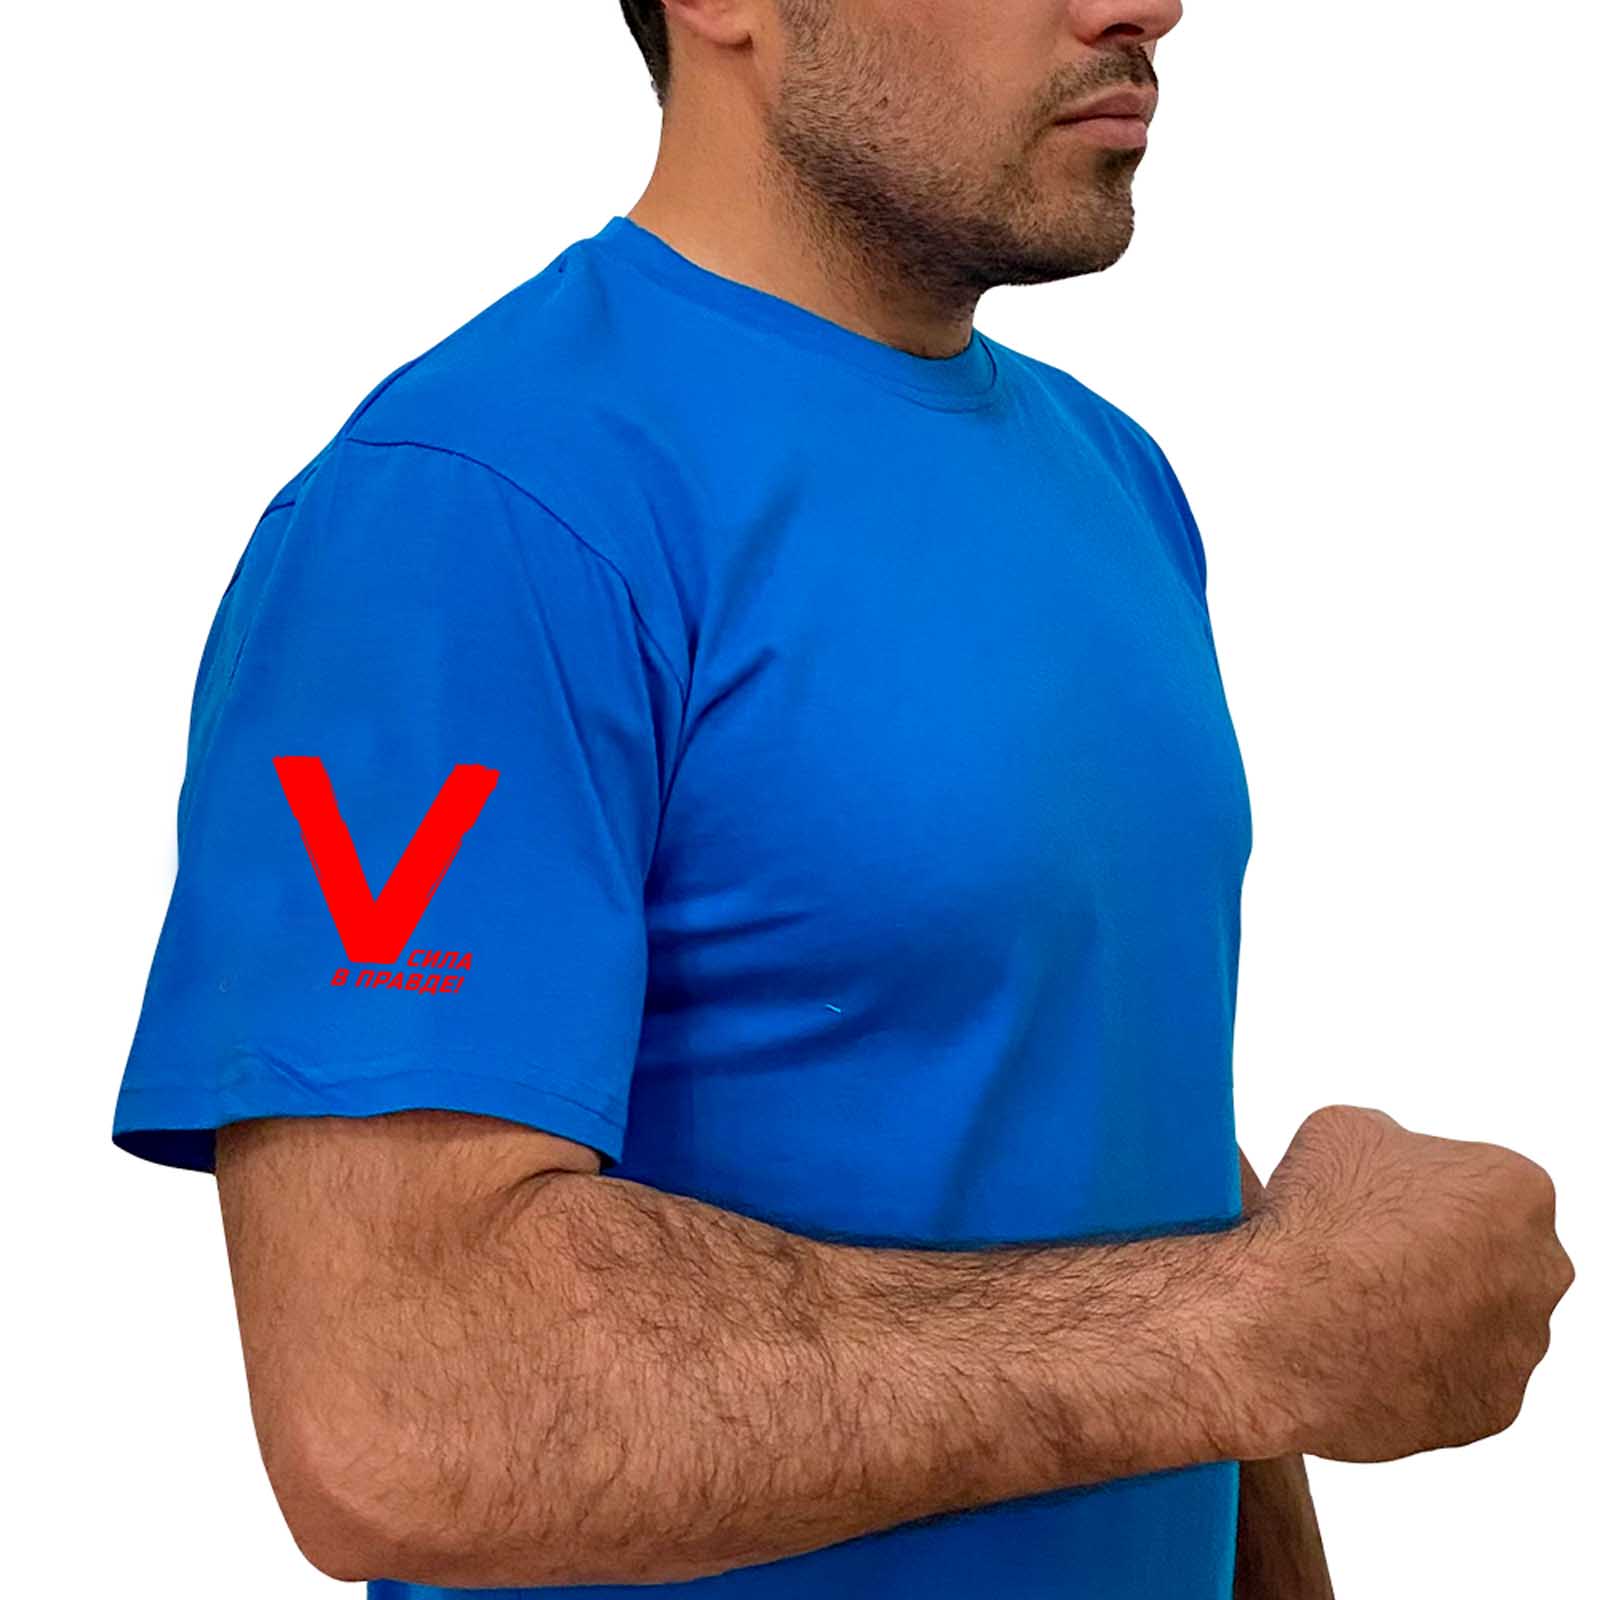 Купить трикотажную стильную  футболку с литерой V онлайн